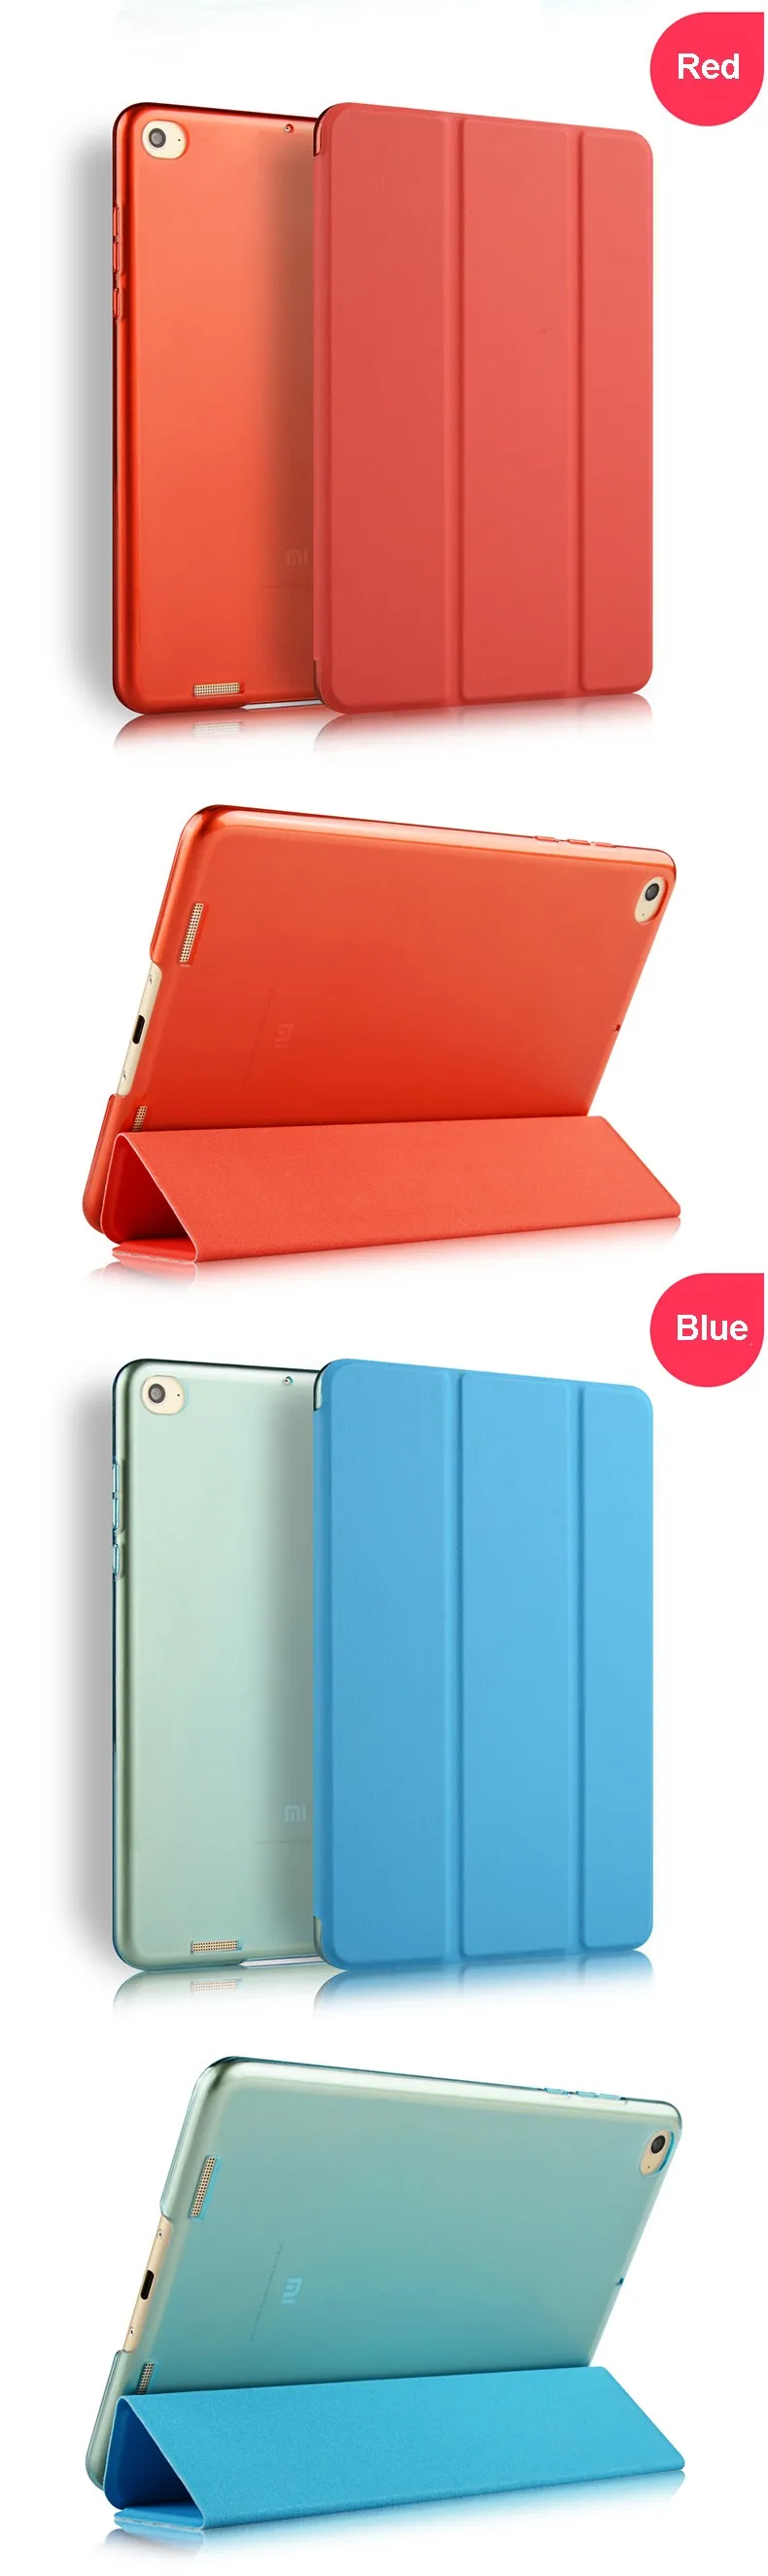 Ультратонкий чехол из искусственной кожи для Xiaomi Mi pad 1, вес 7,9 дюйма, чехол-светильник из жесткого поликарбоната для Xiaomi Mi Pad 1+ стилус+ пленка